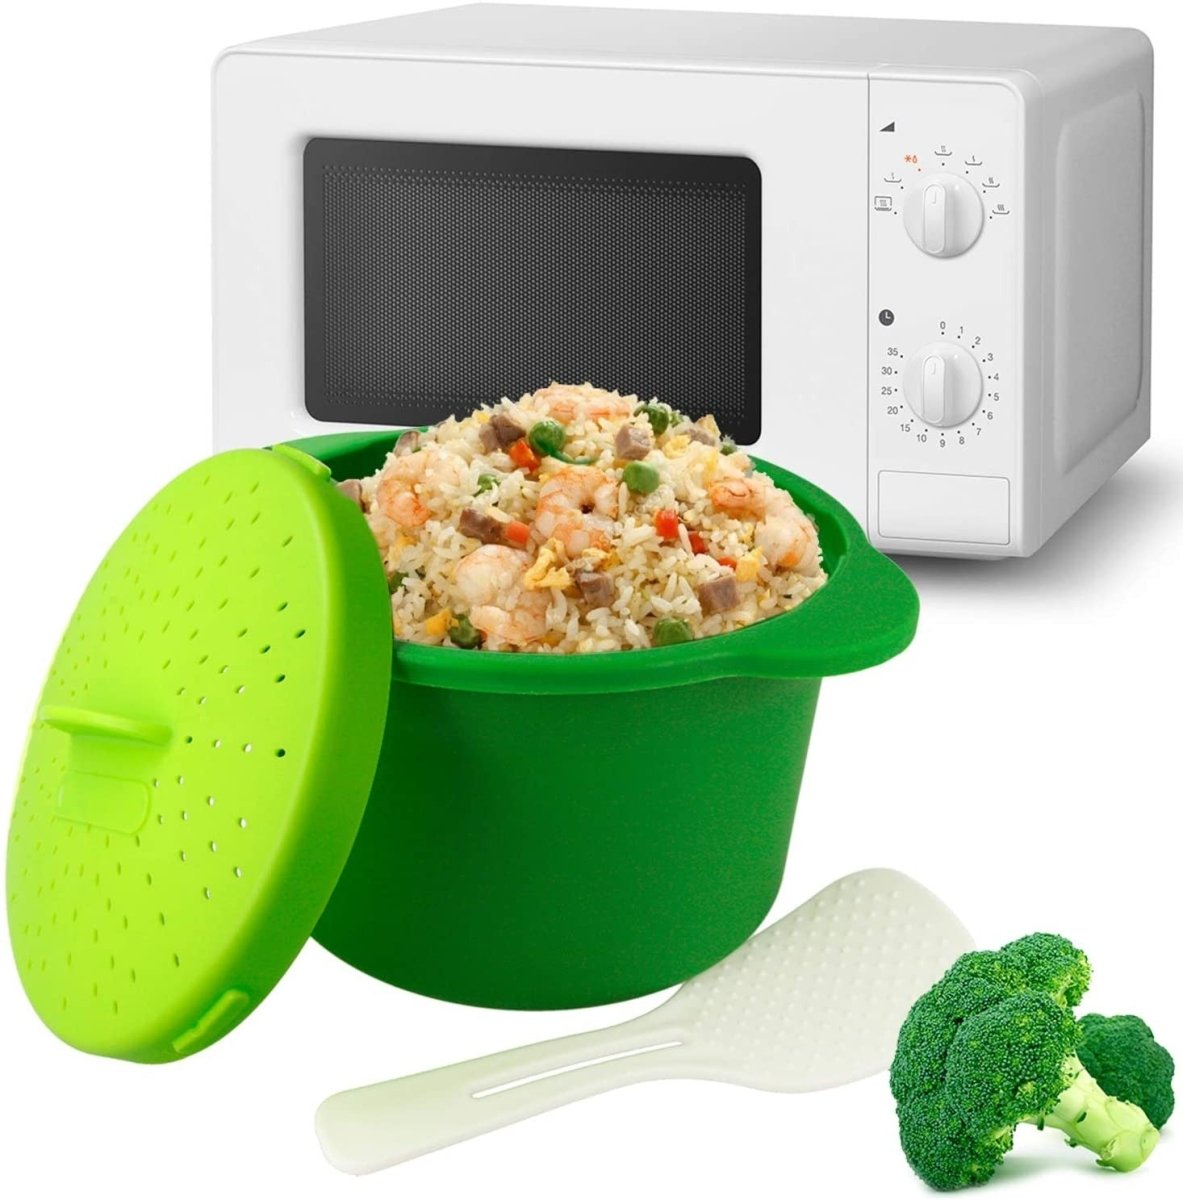 Utensilios para cocinar en microondas: arroz, pasta y más, Gastronomía